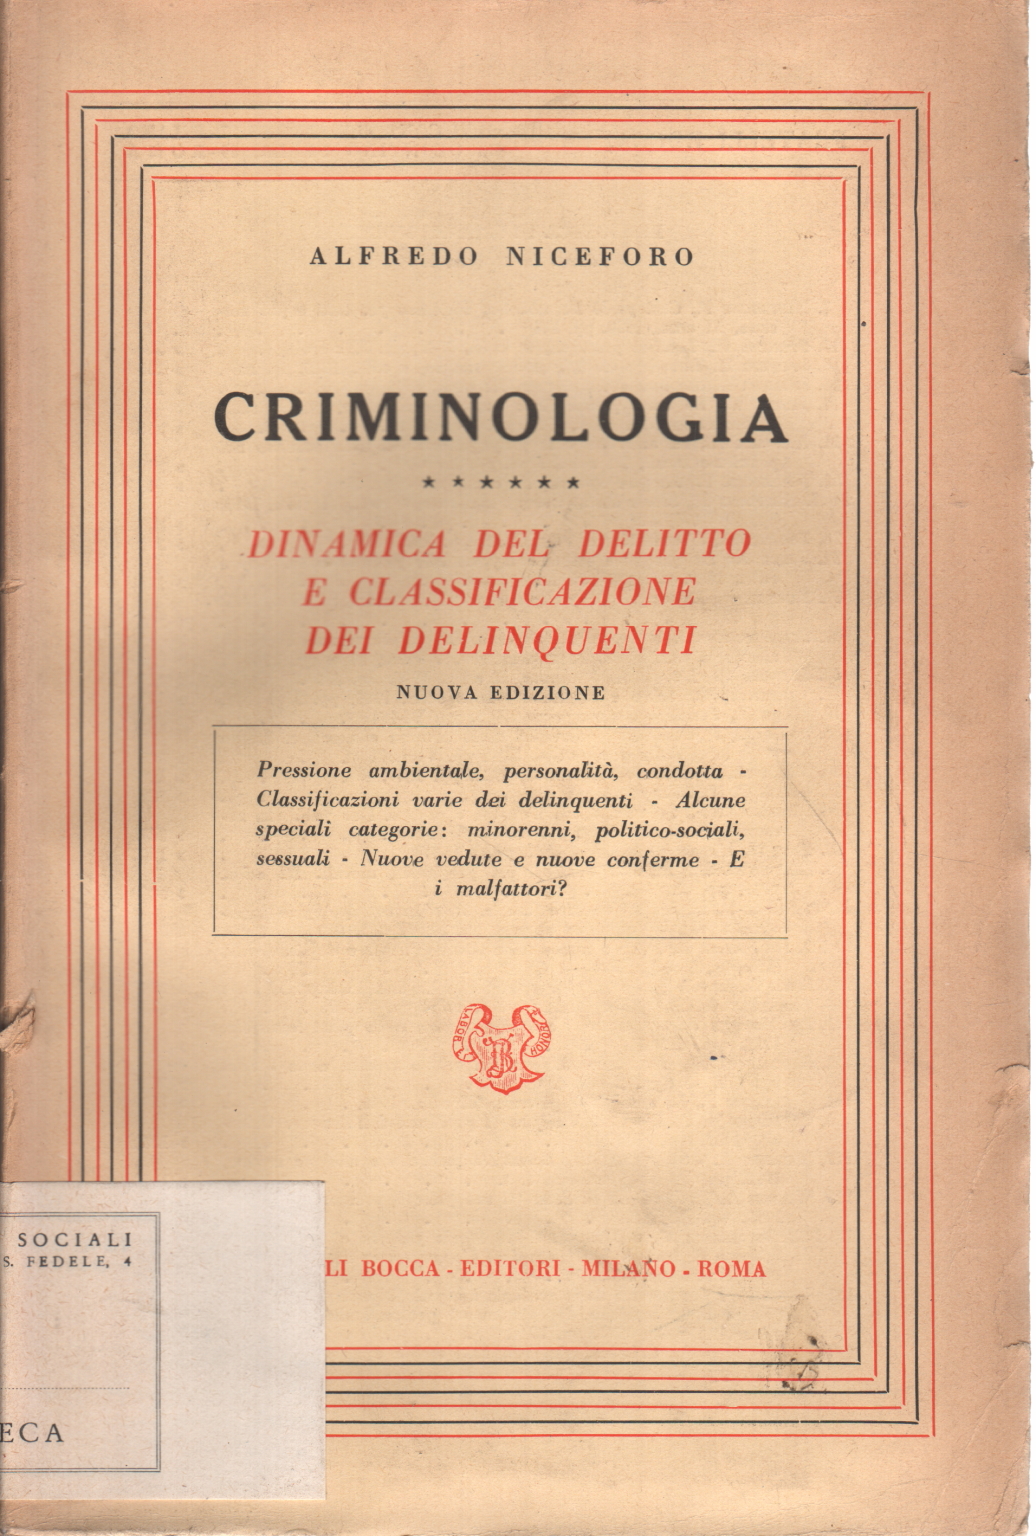 Criminologia (vol. 5)